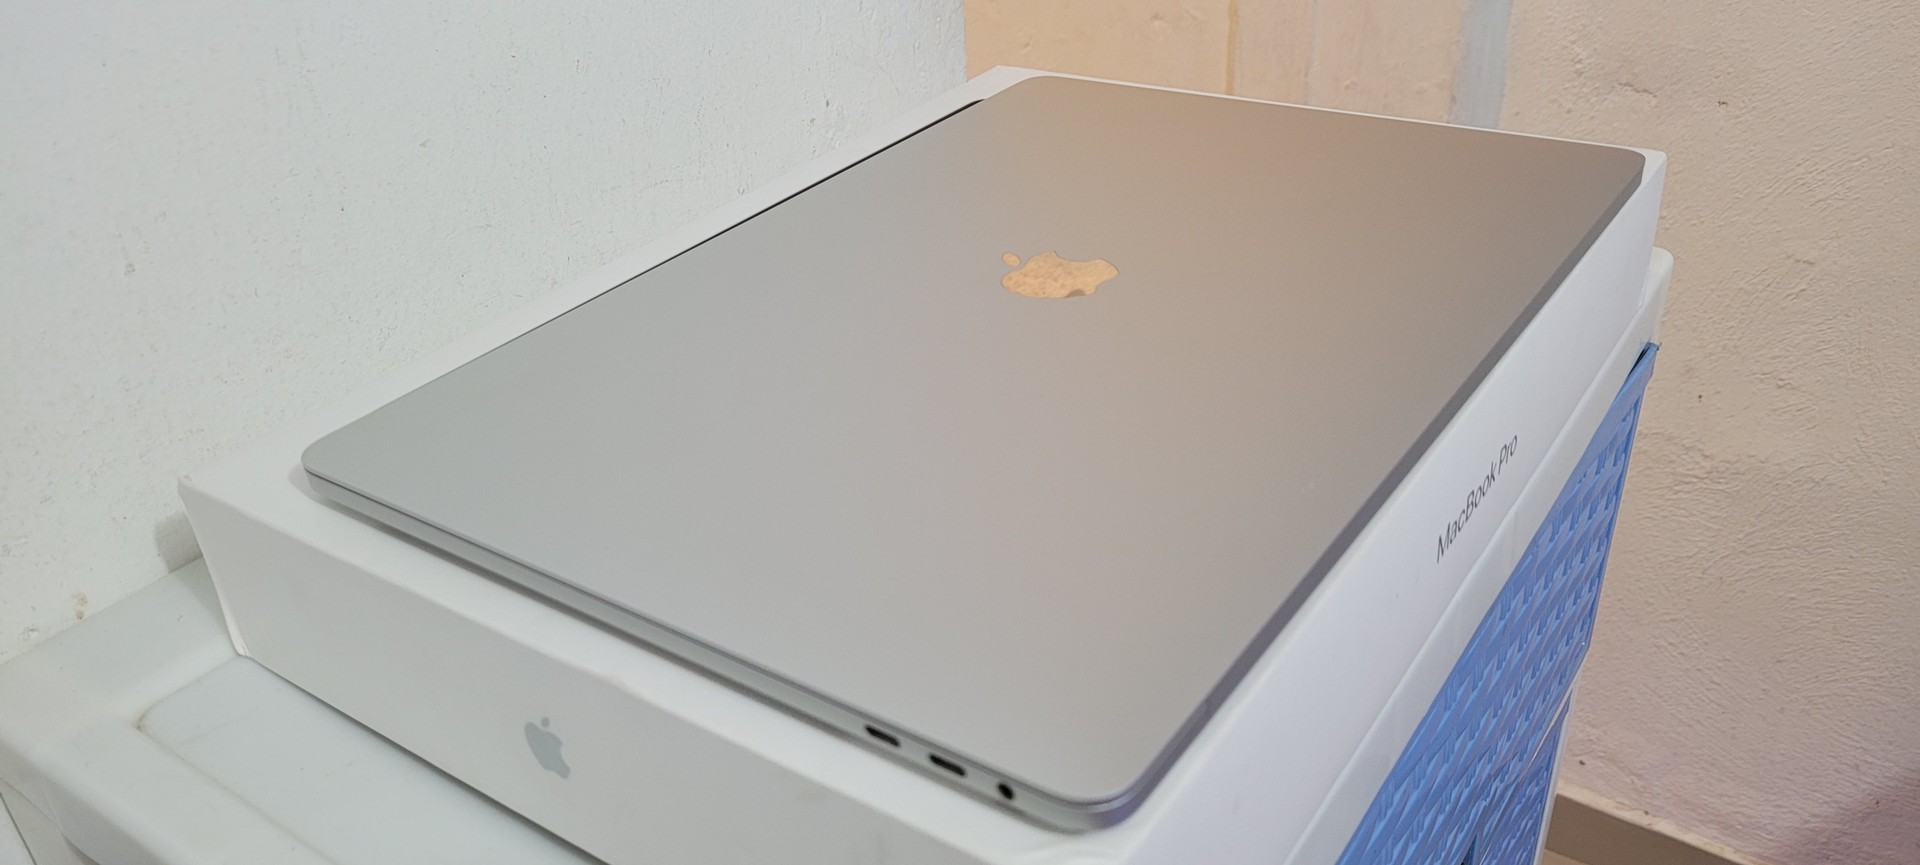 computadoras y laptops - Macbook Pro Retina 15.5 Pulg Core i7 Ram 16gb Disco 256gb SSD año 2018 2